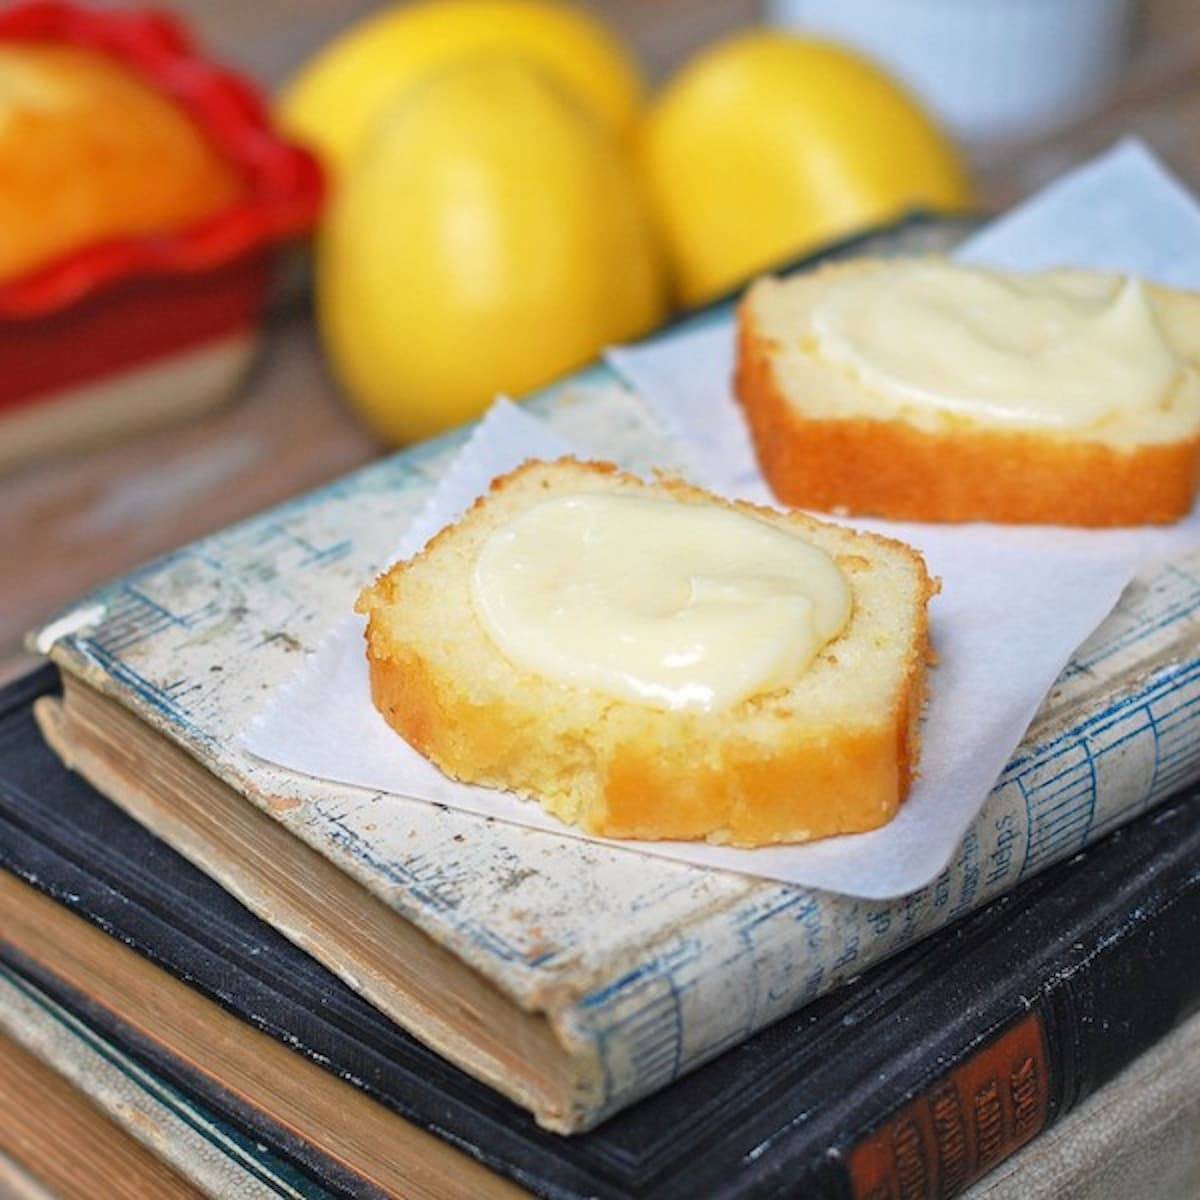 Honey butter spread on a homemade lemon loaf. 